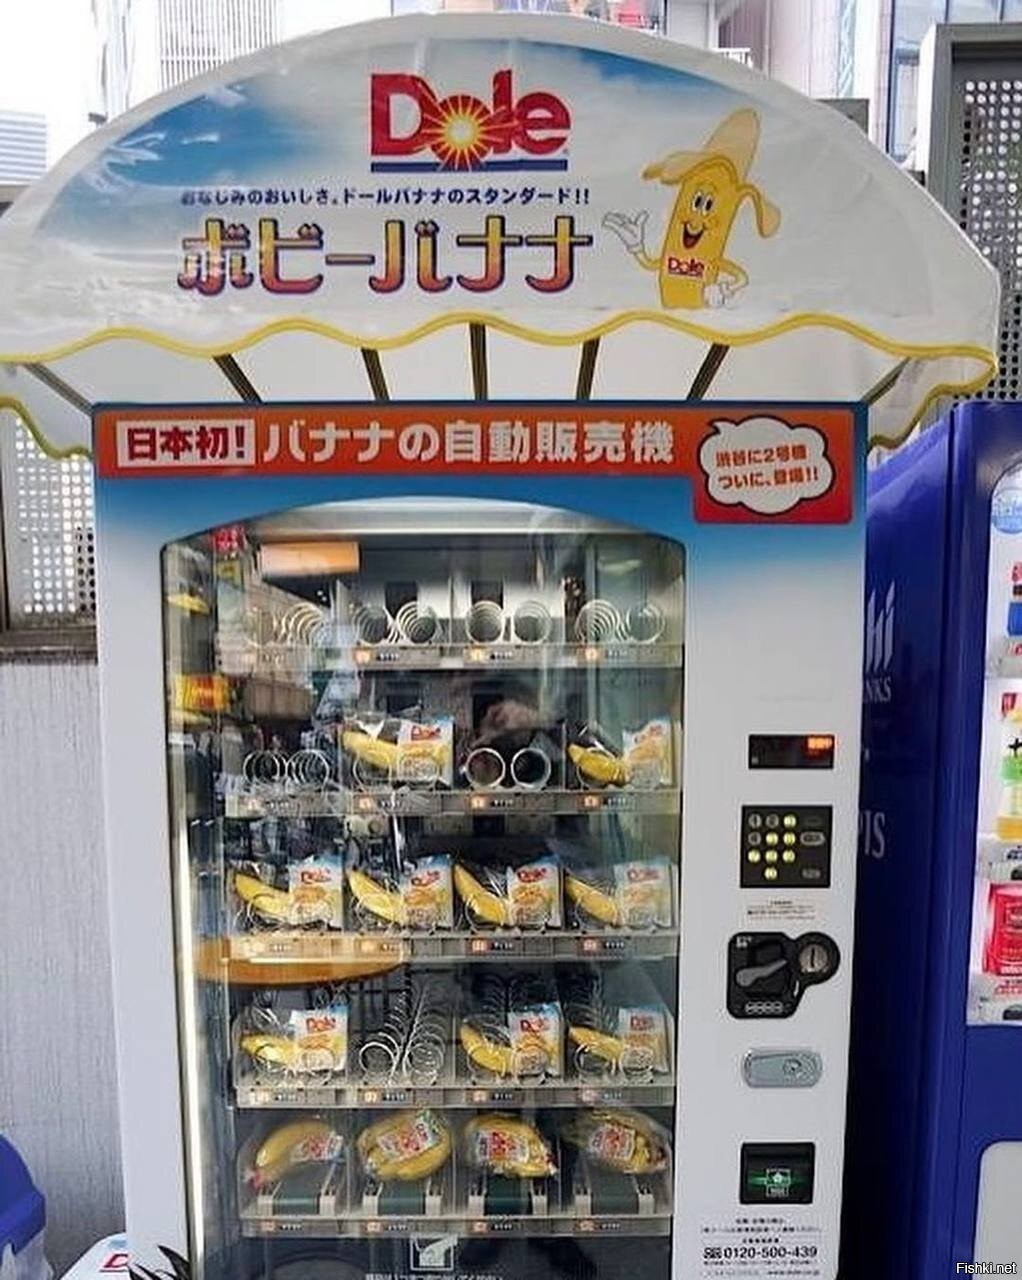 Автоматы с быстрыми выводами денег opciony. Японские вендинговые автоматы. Вендинговые аппараты в Японии. Вендинговые аппараты с едой. Автоматы с едой в Японии.